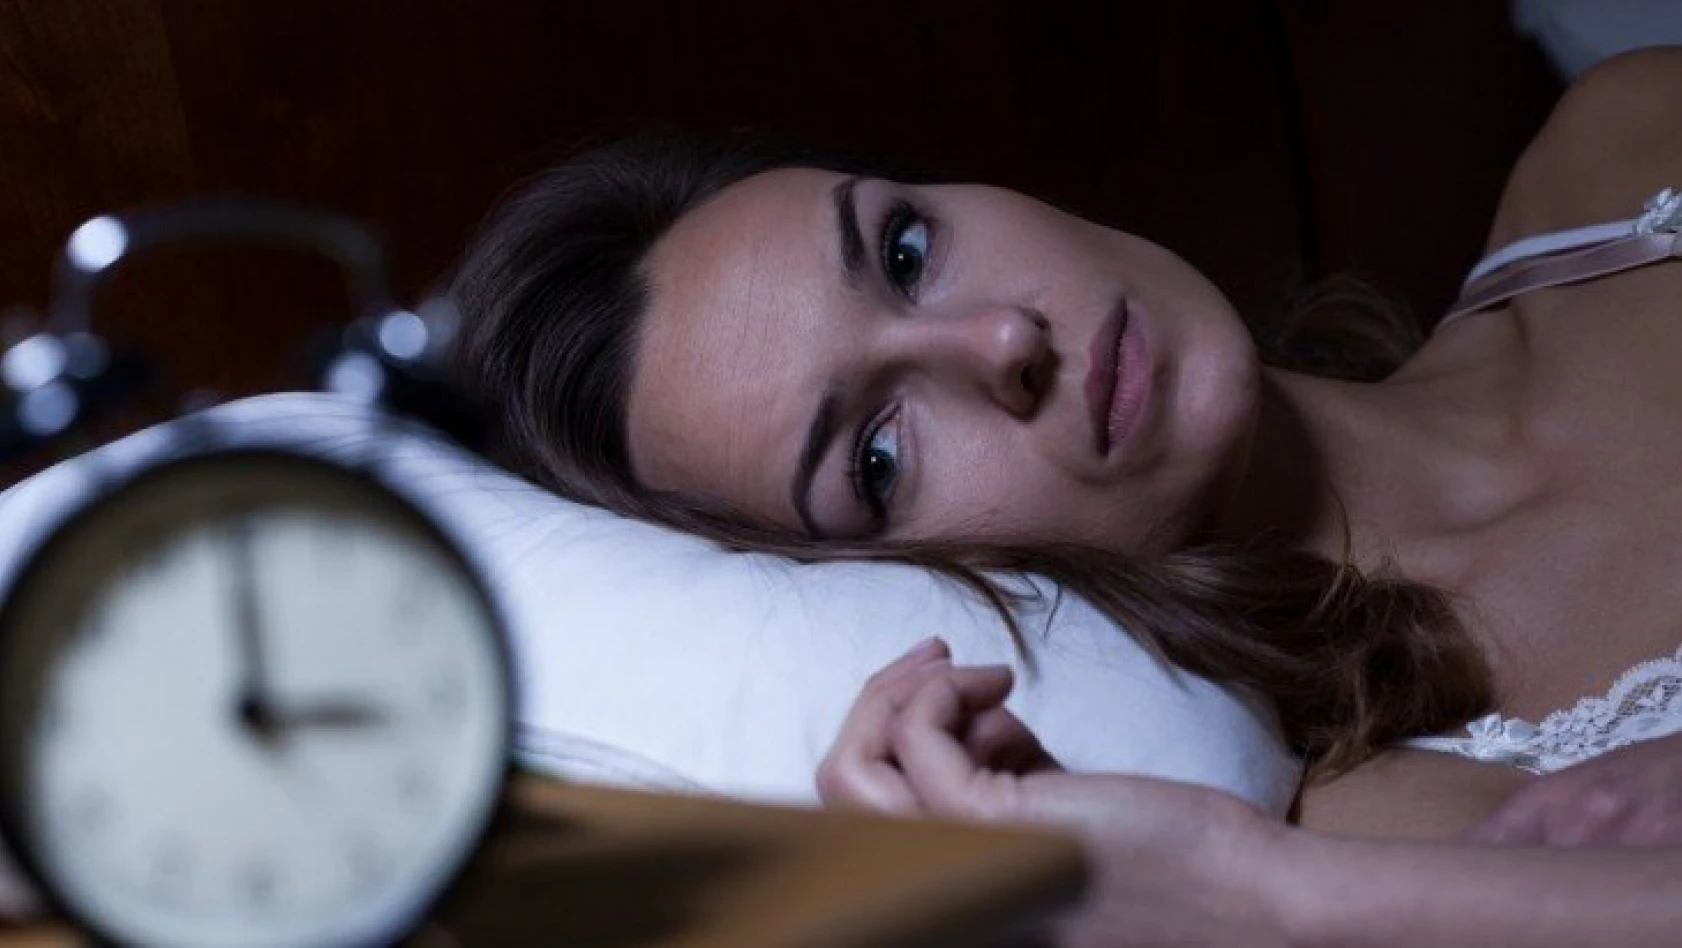 Az uyku, erken ölüm nedeni mi?